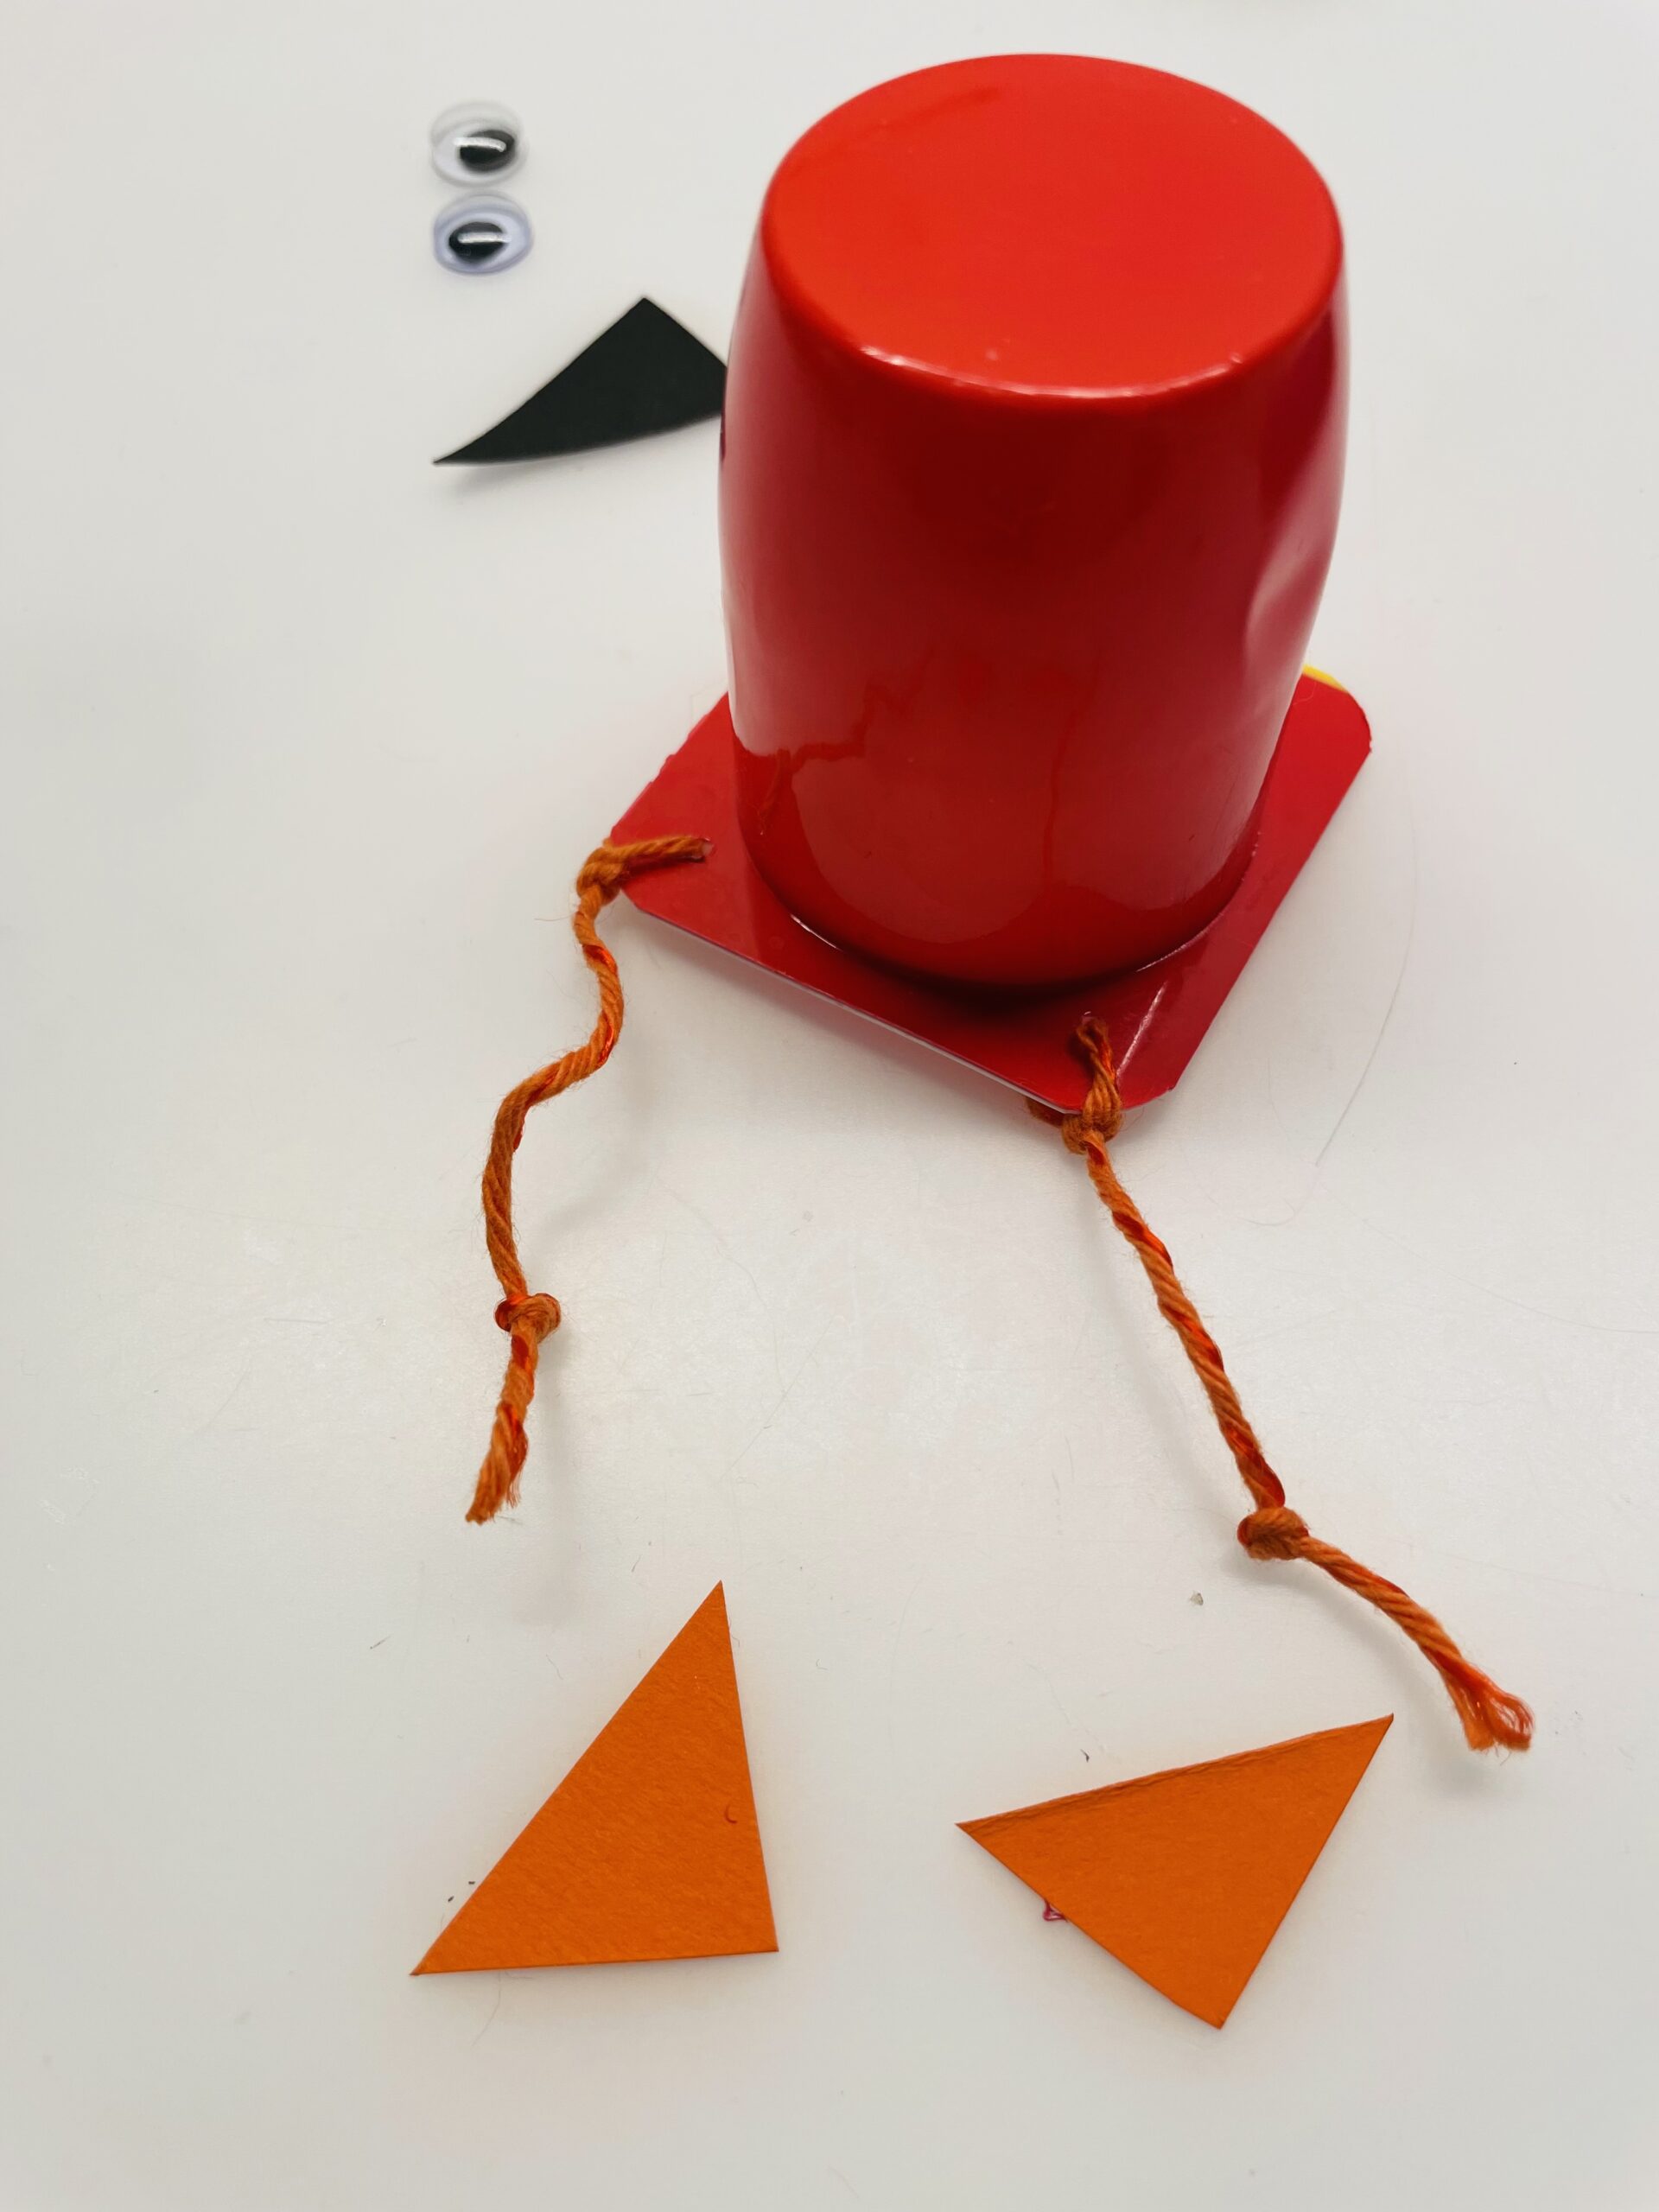 Bild zum Schritt 10 für das Bastel- und DIY-Abenteuer für Kinder: 'Schneidet euch zwei Dreiecke mit 2cm x2cm aus. Das sind...'